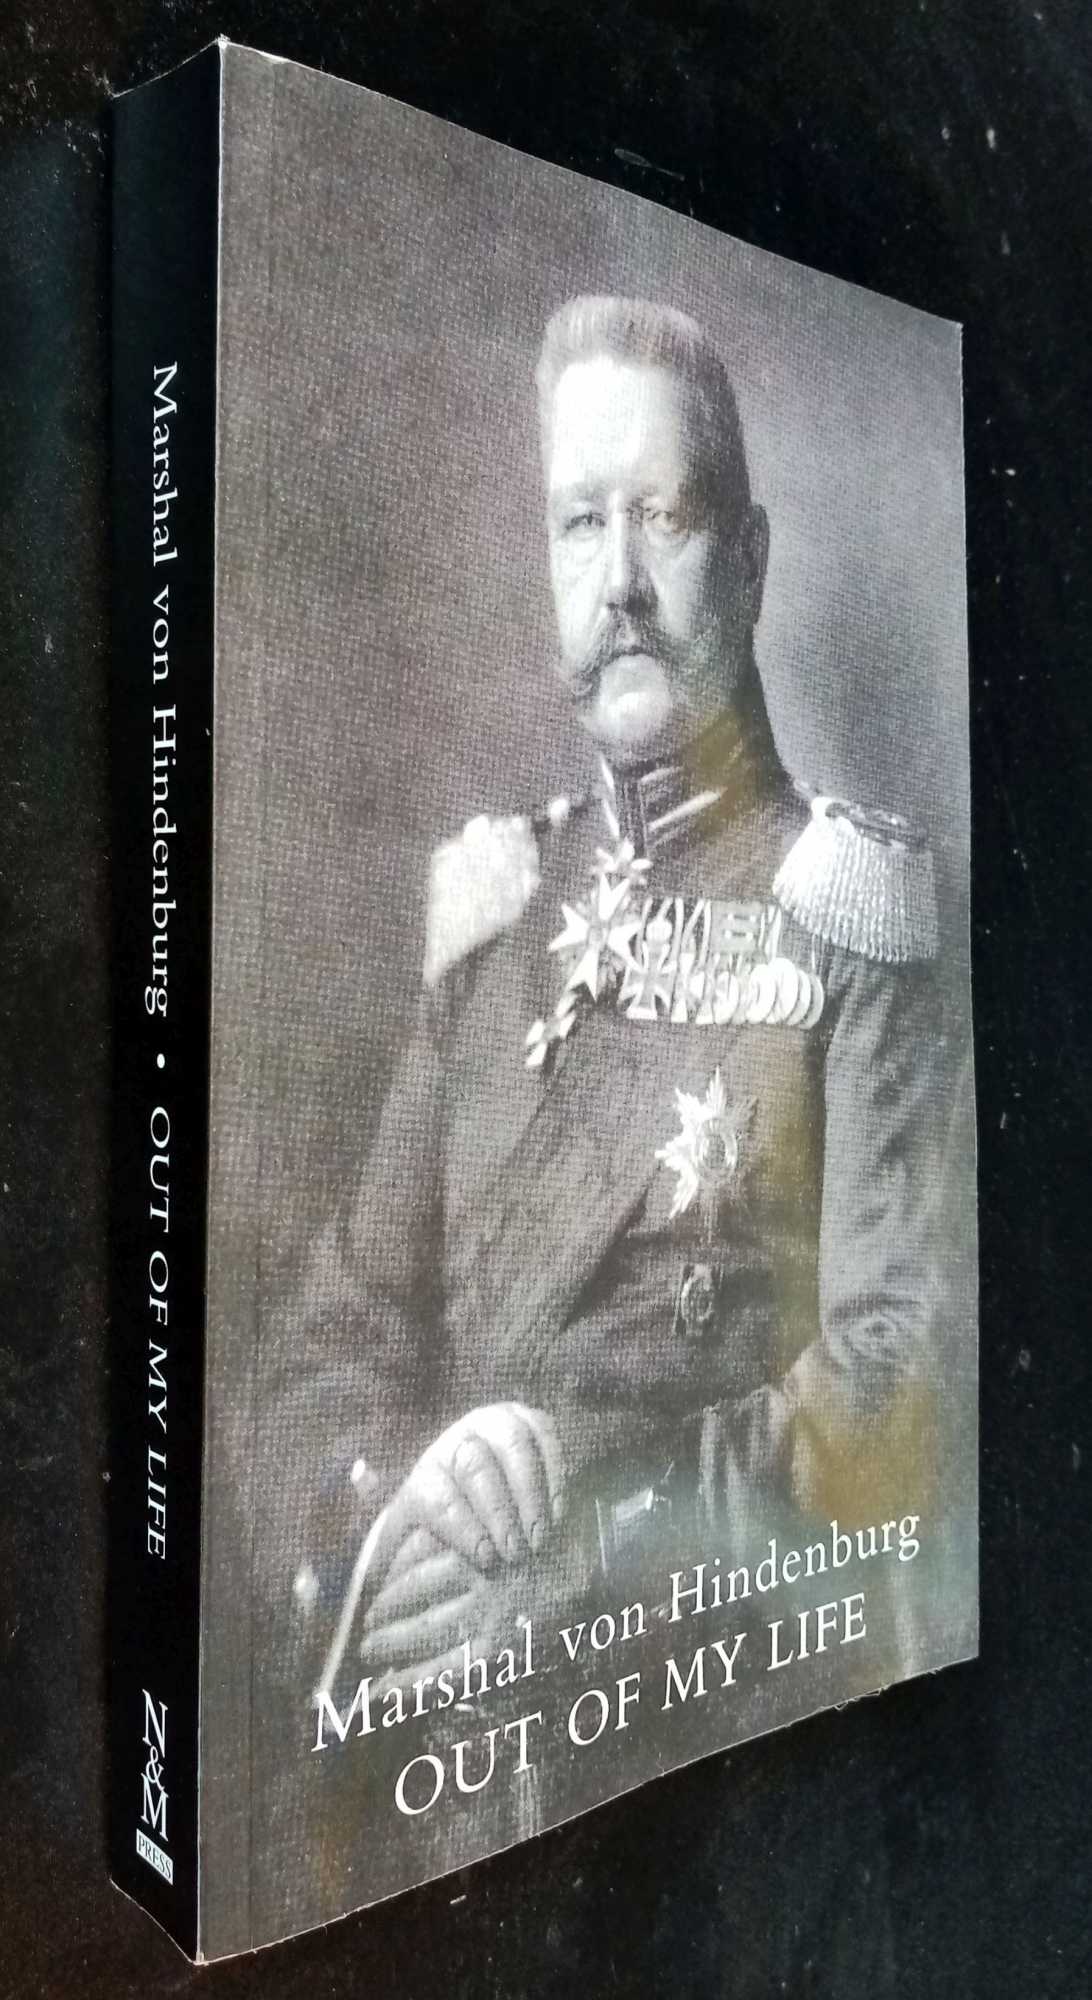 Marshal von Hindenburg - Out of My Life